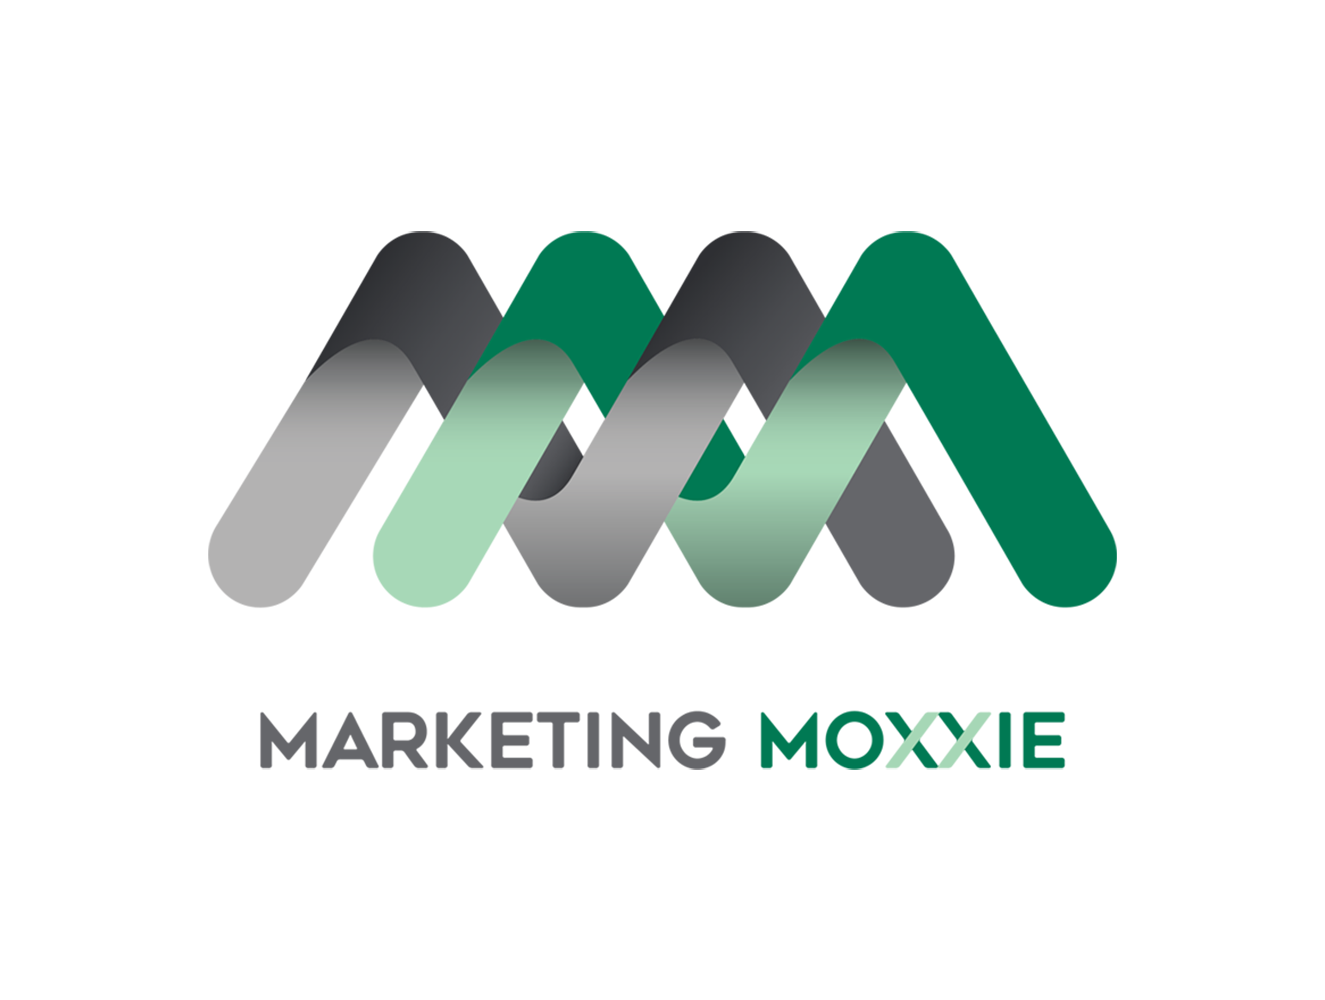 Moxxie logo, four color version